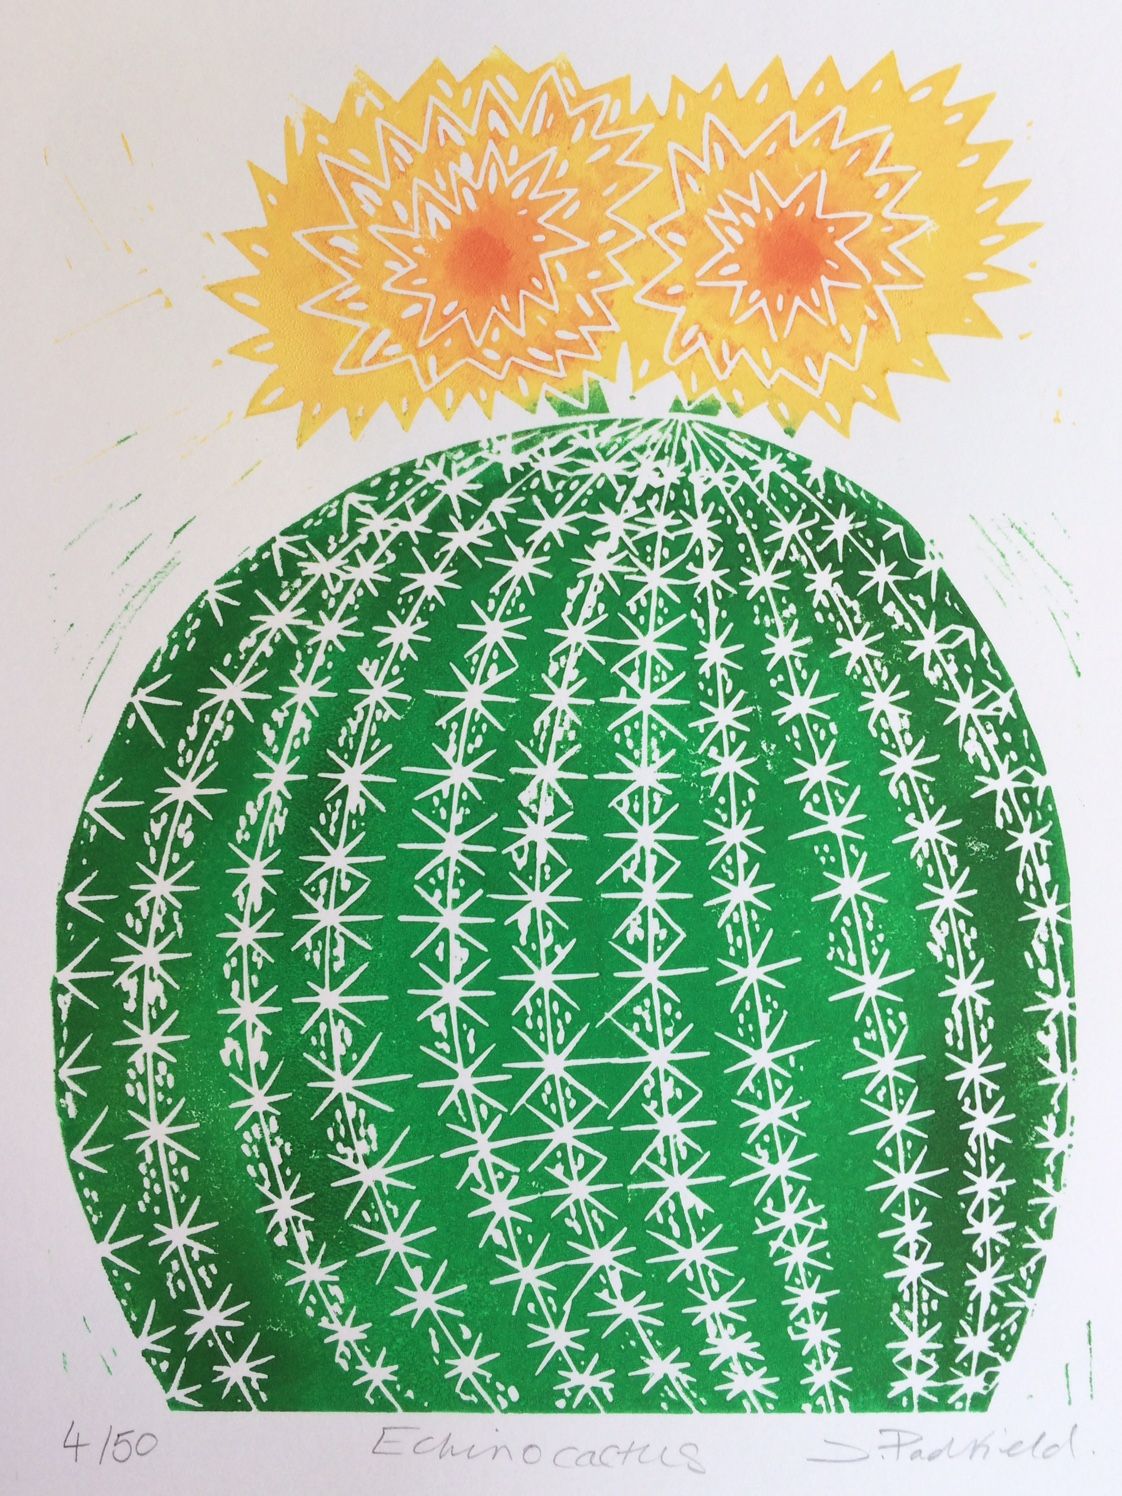 Echino Cactus by Joanna Padfield